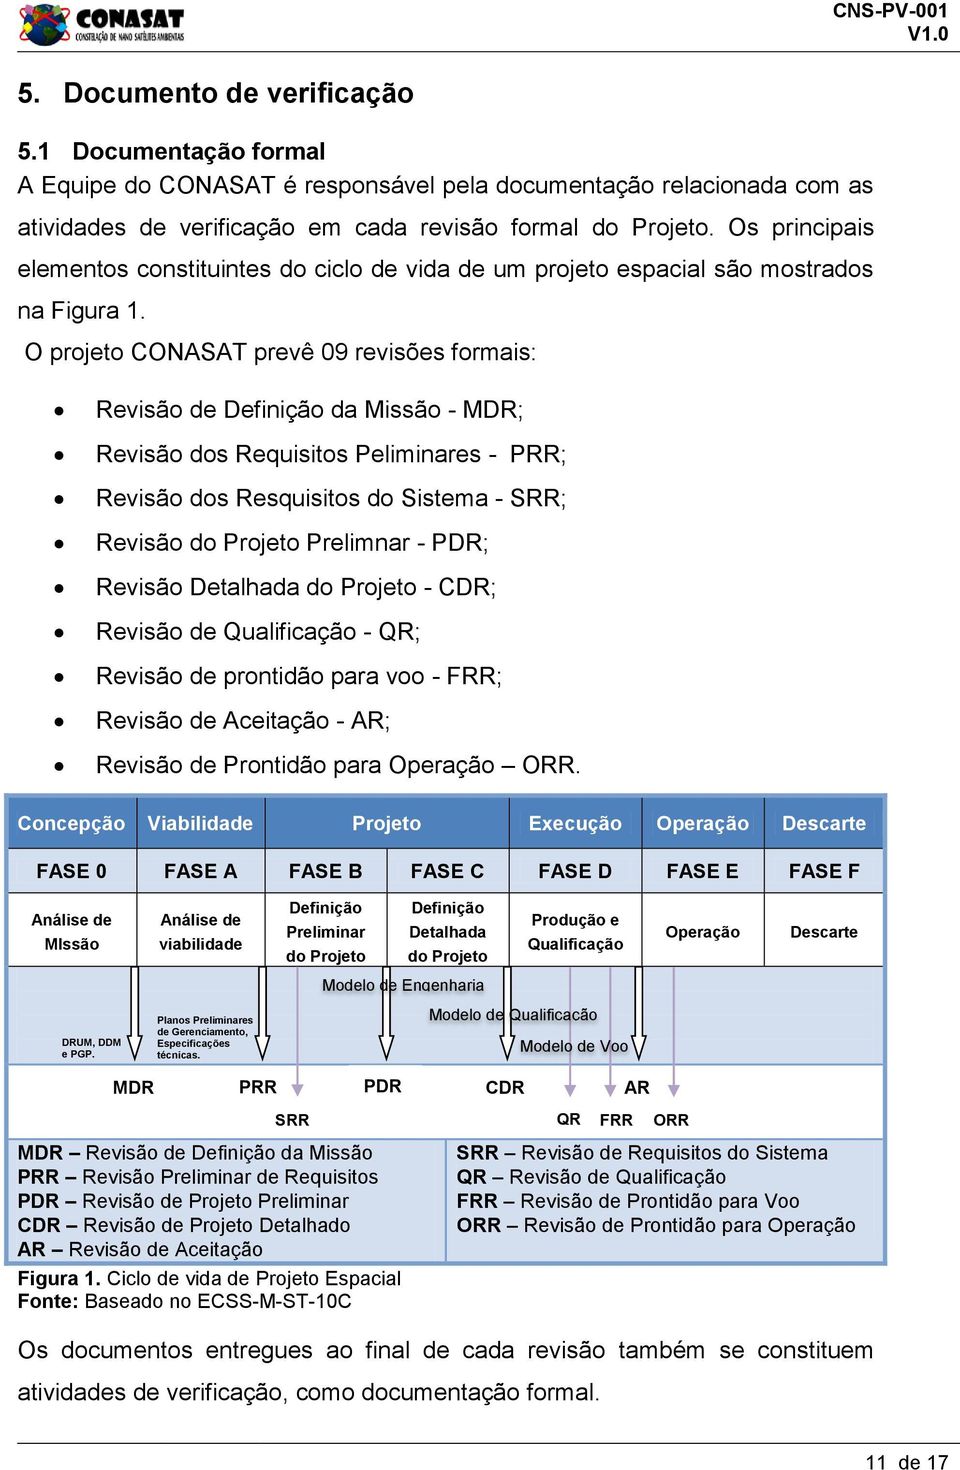 O projeto CONASAT prevê 09 revisões formais: Revisão de Definição da Missão - MDR; Revisão dos Requisitos Peliminares - PRR; Revisão dos Resquisitos do Sistema - SRR; Revisão do Projeto Prelimnar -